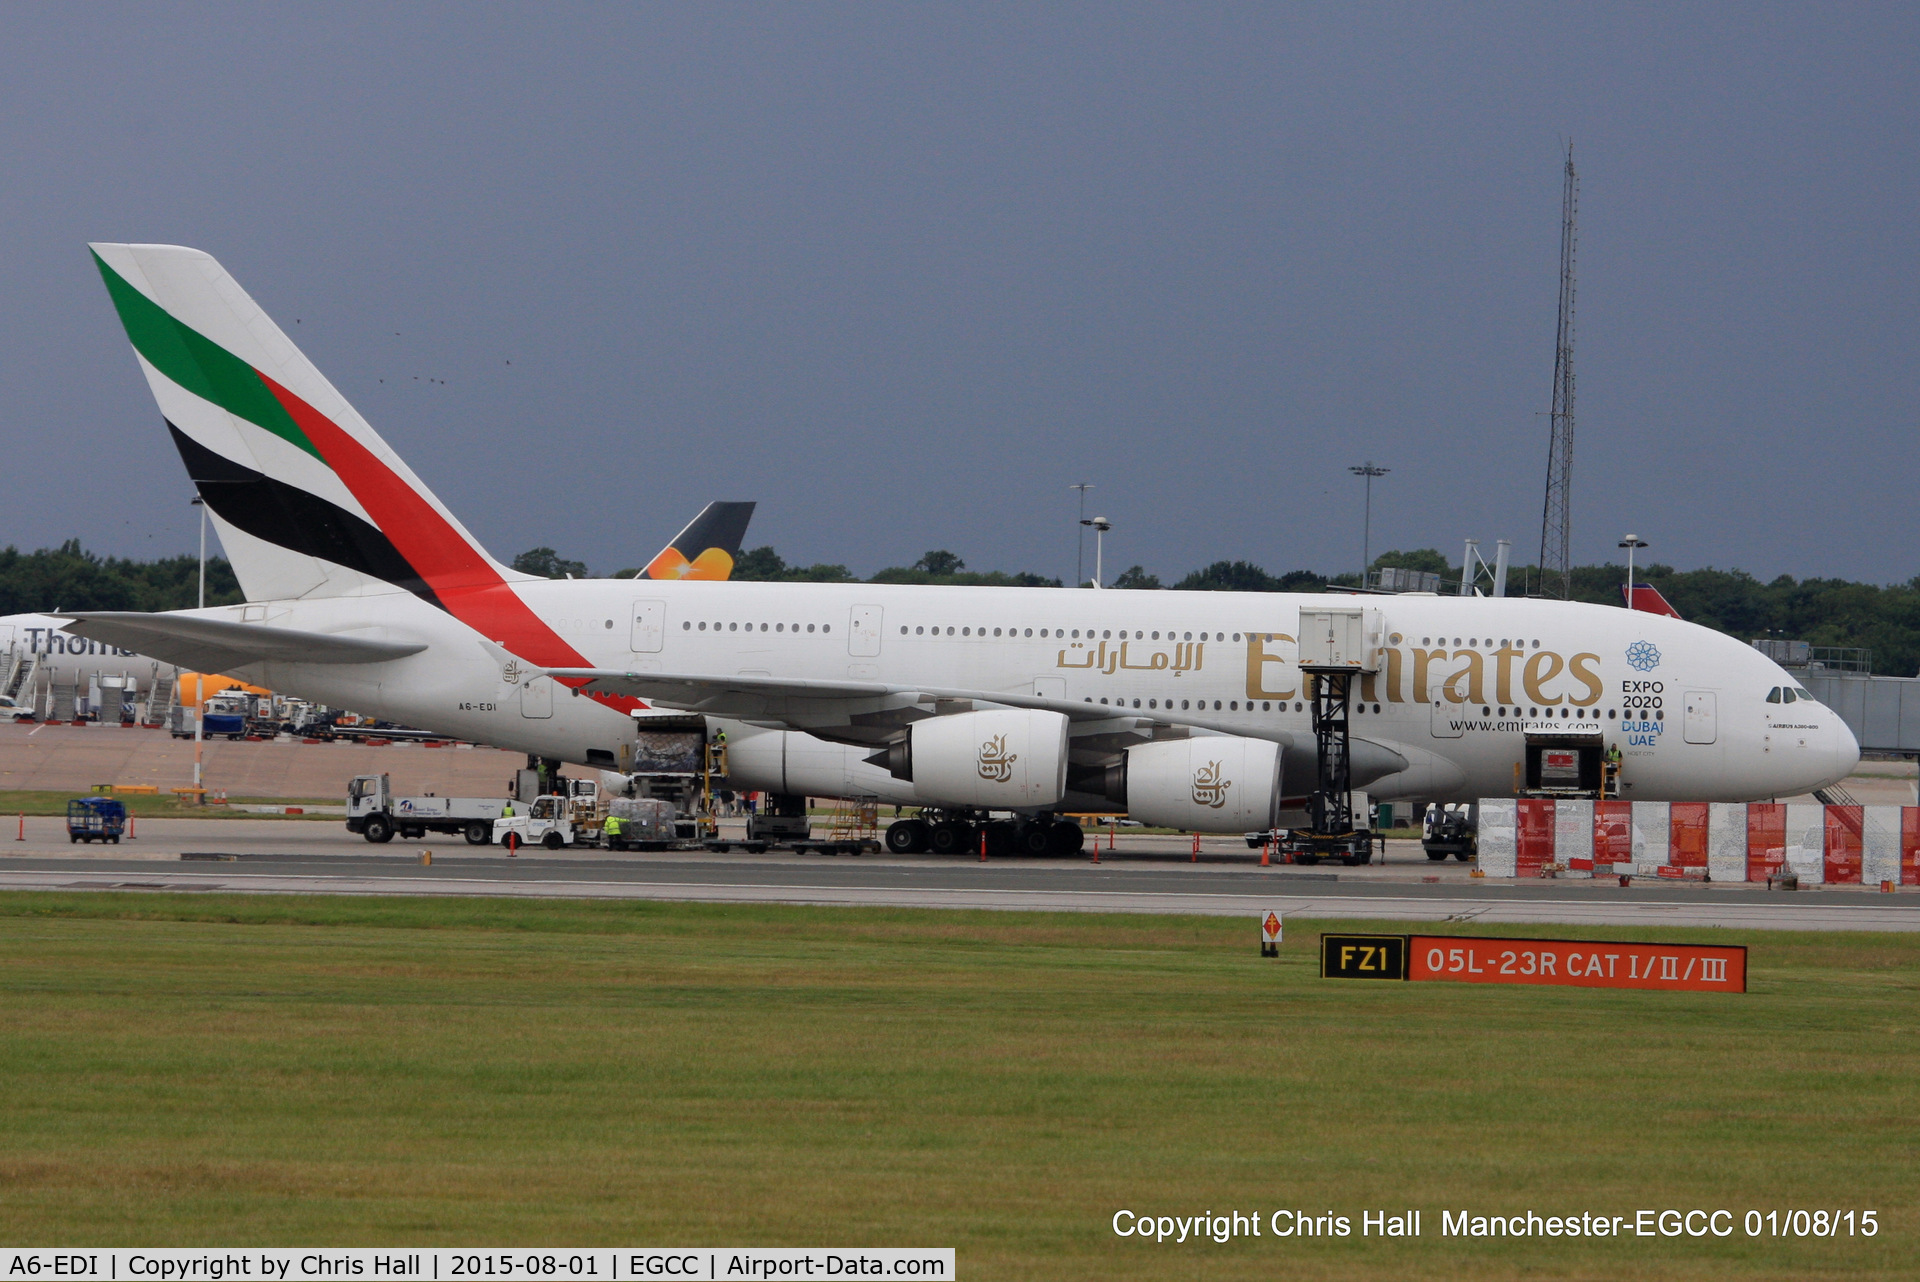 A6-EDI, 2009 Airbus A380-861 C/N 028, Emirates